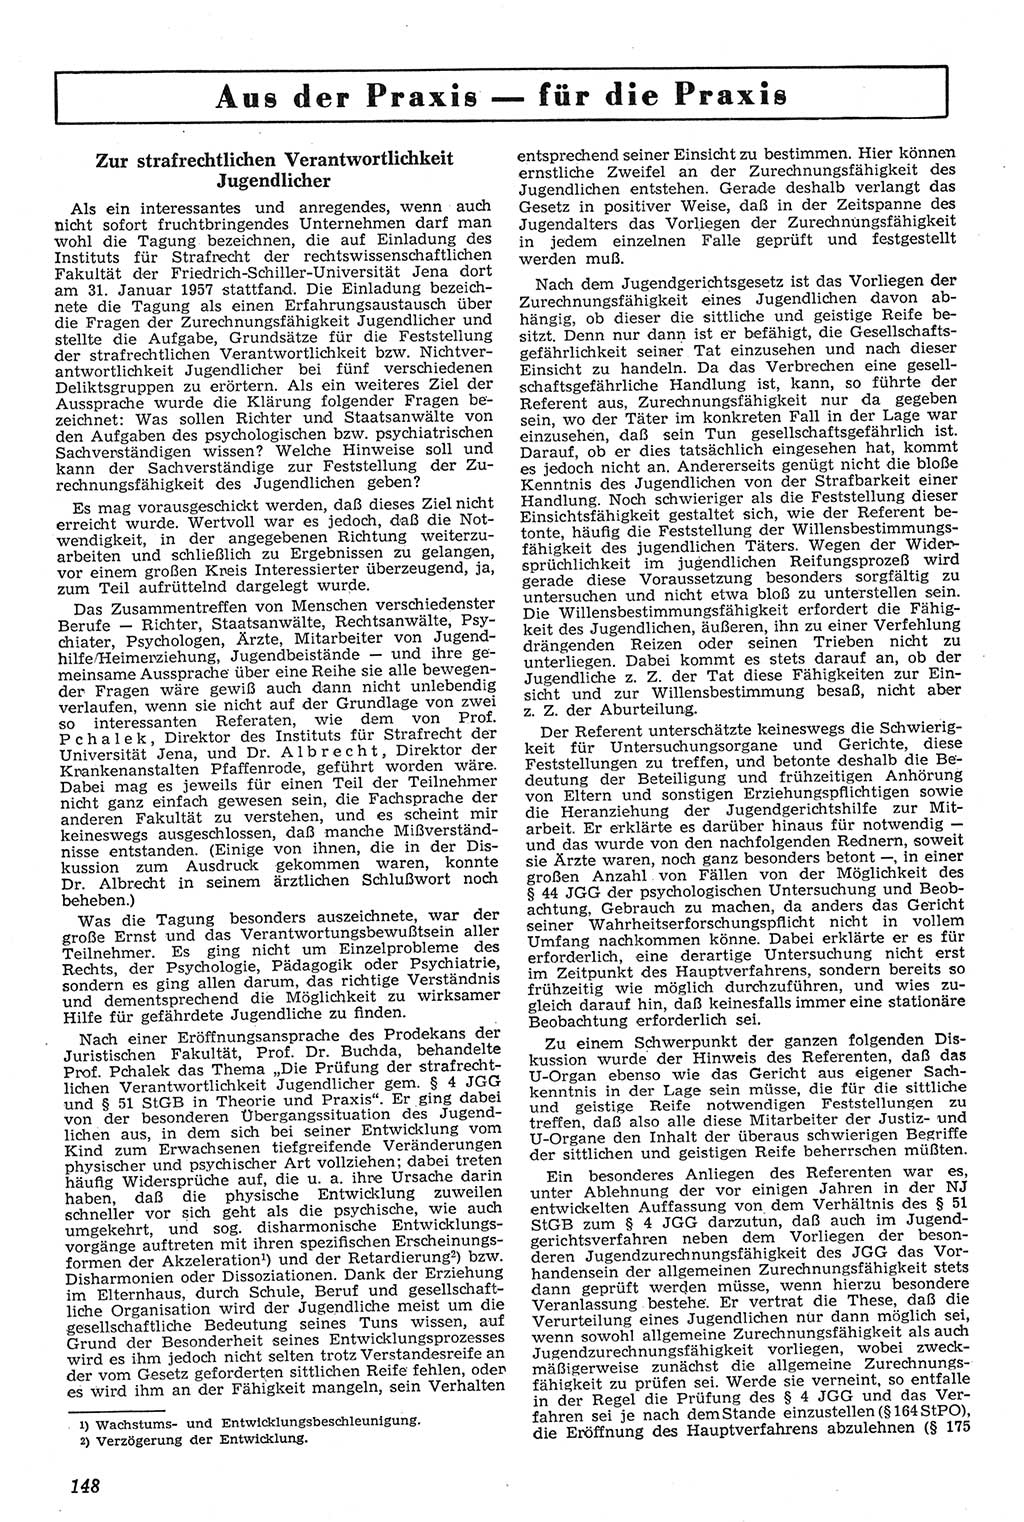 Neue Justiz (NJ), Zeitschrift für Recht und Rechtswissenschaft [Deutsche Demokratische Republik (DDR)], 11. Jahrgang 1957, Seite 148 (NJ DDR 1957, S. 148)